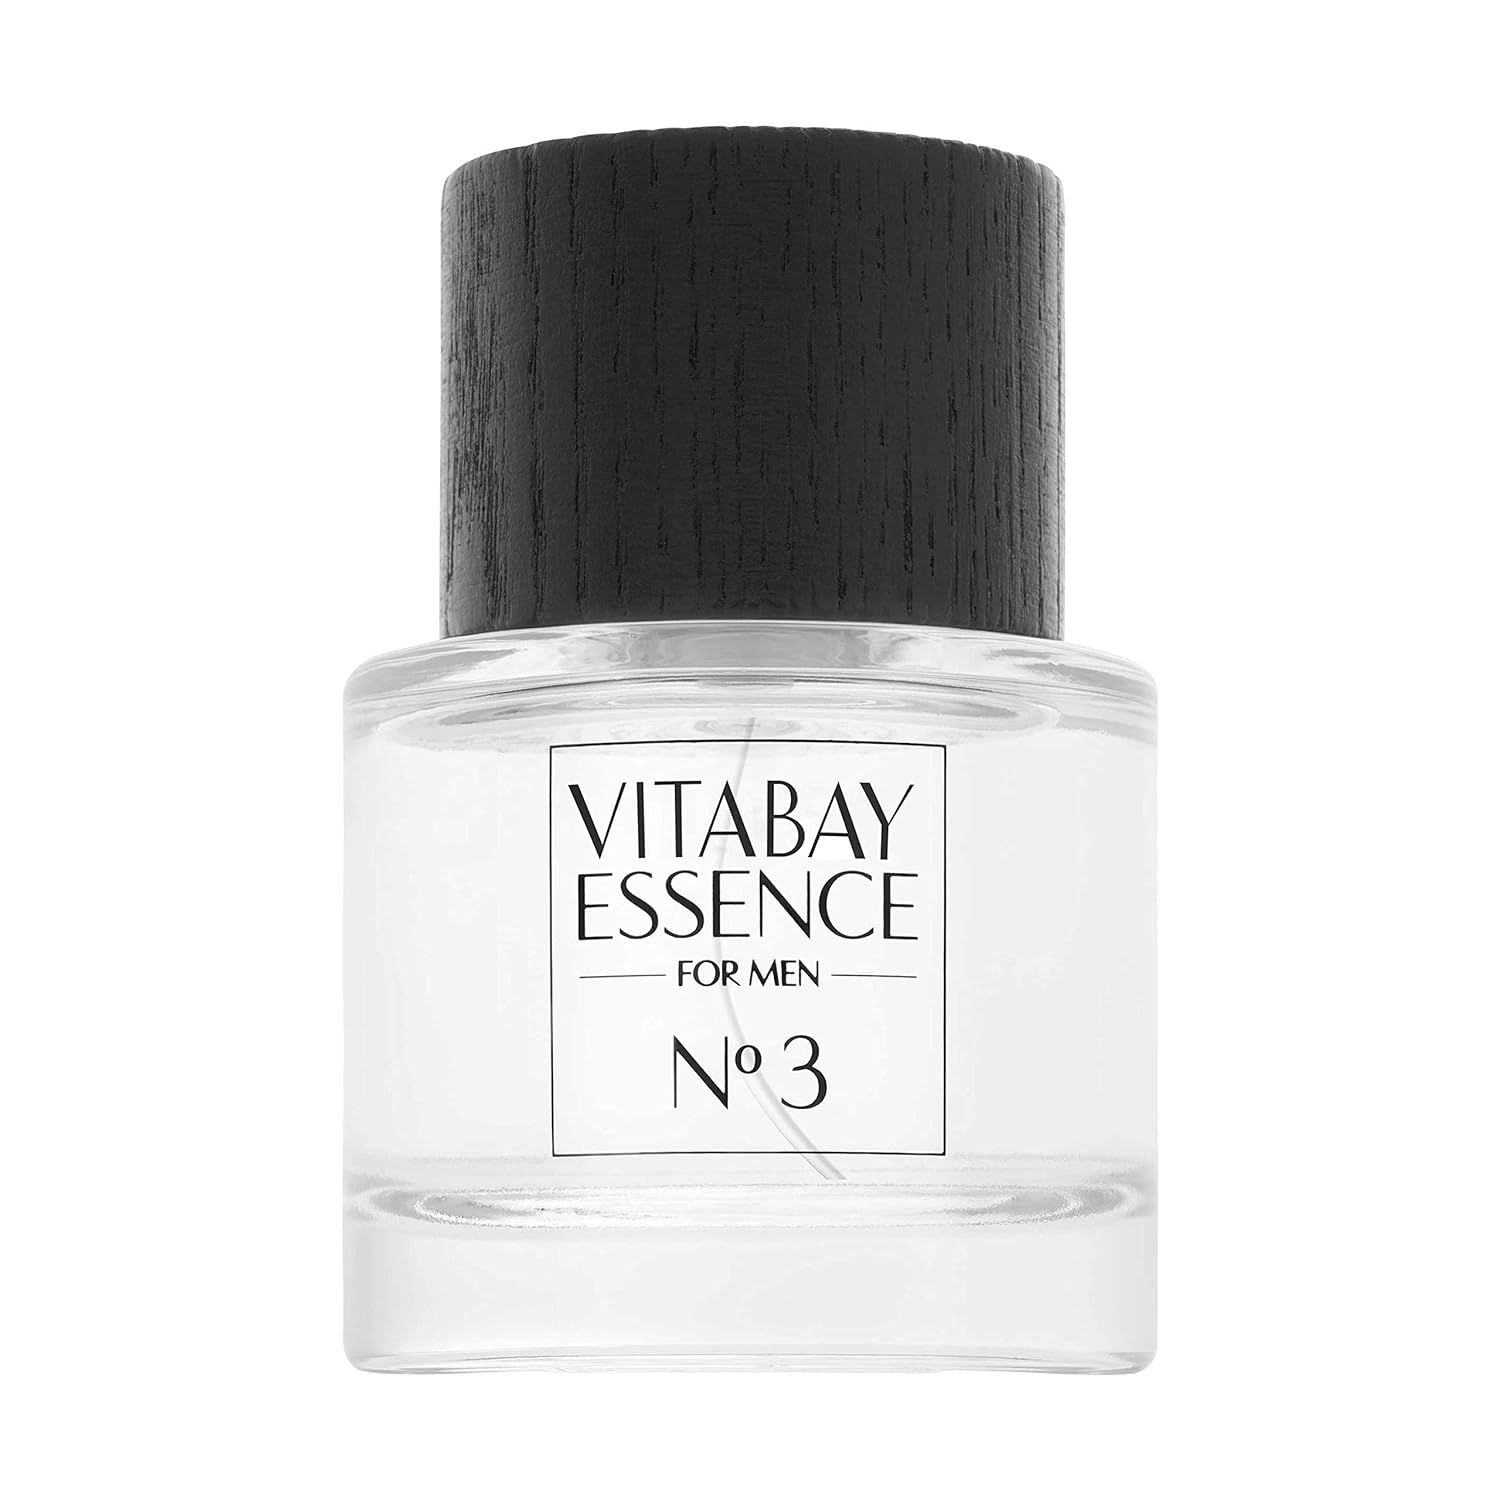 Vitabay Essence for Men No. 3 Eau de Toilette